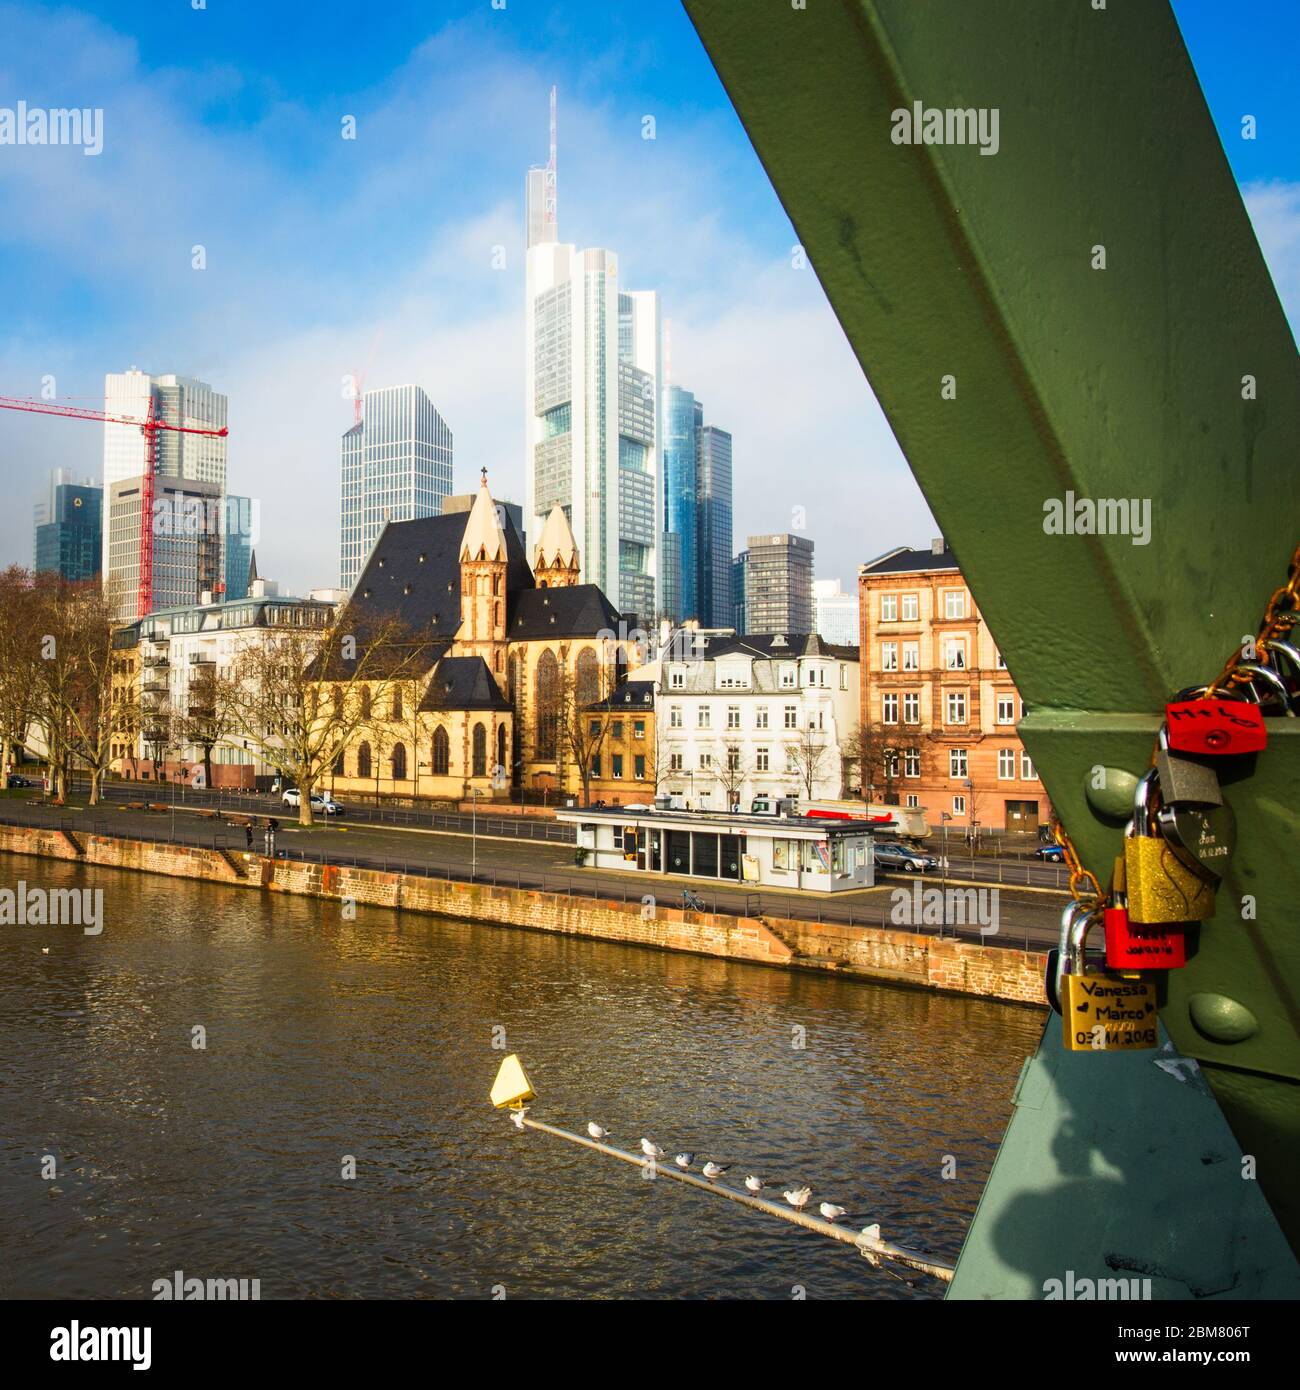 Liebesschlösser auf einem Träger des Eiserner Steg in Frankfurt am Main, Hessen, Deutschland. Stockfoto